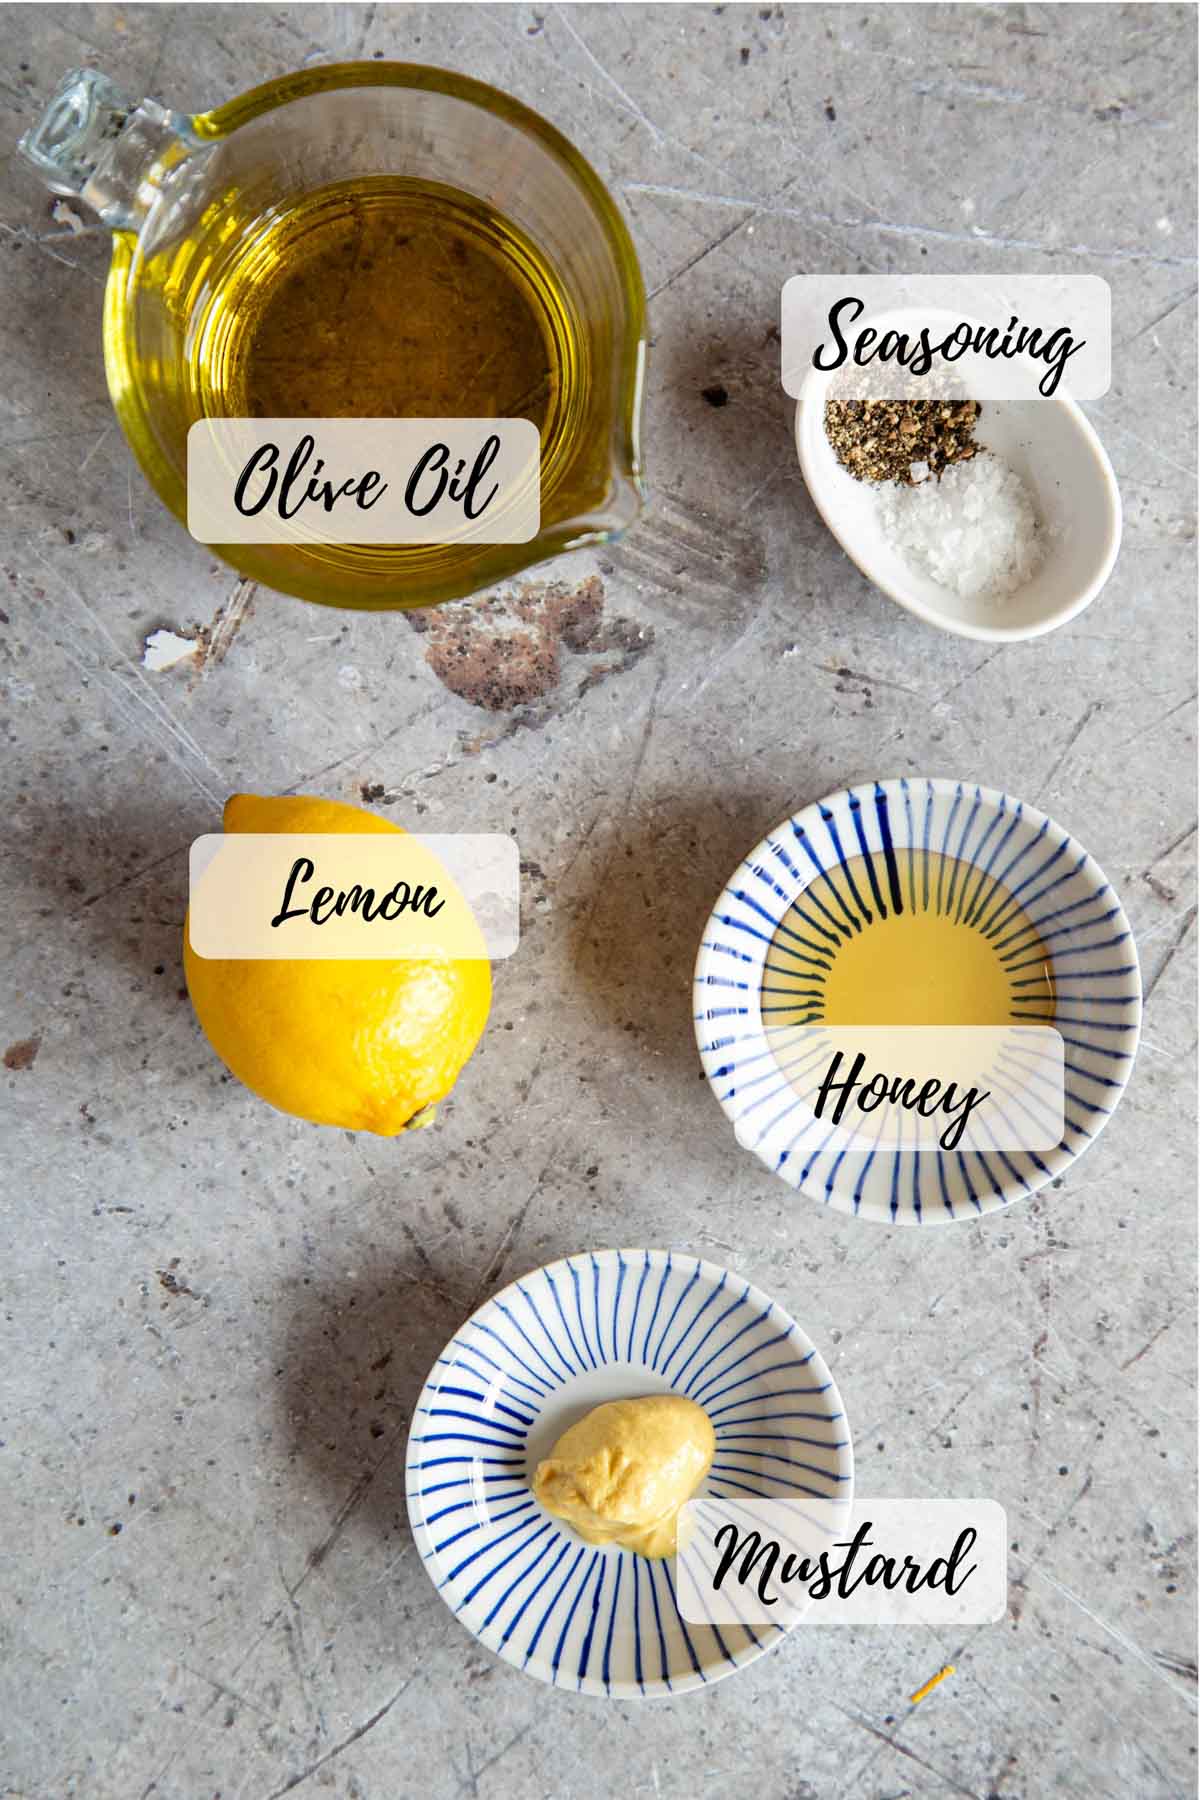 The ingredients: olive oil, seasoning, honey, mustard and lemon